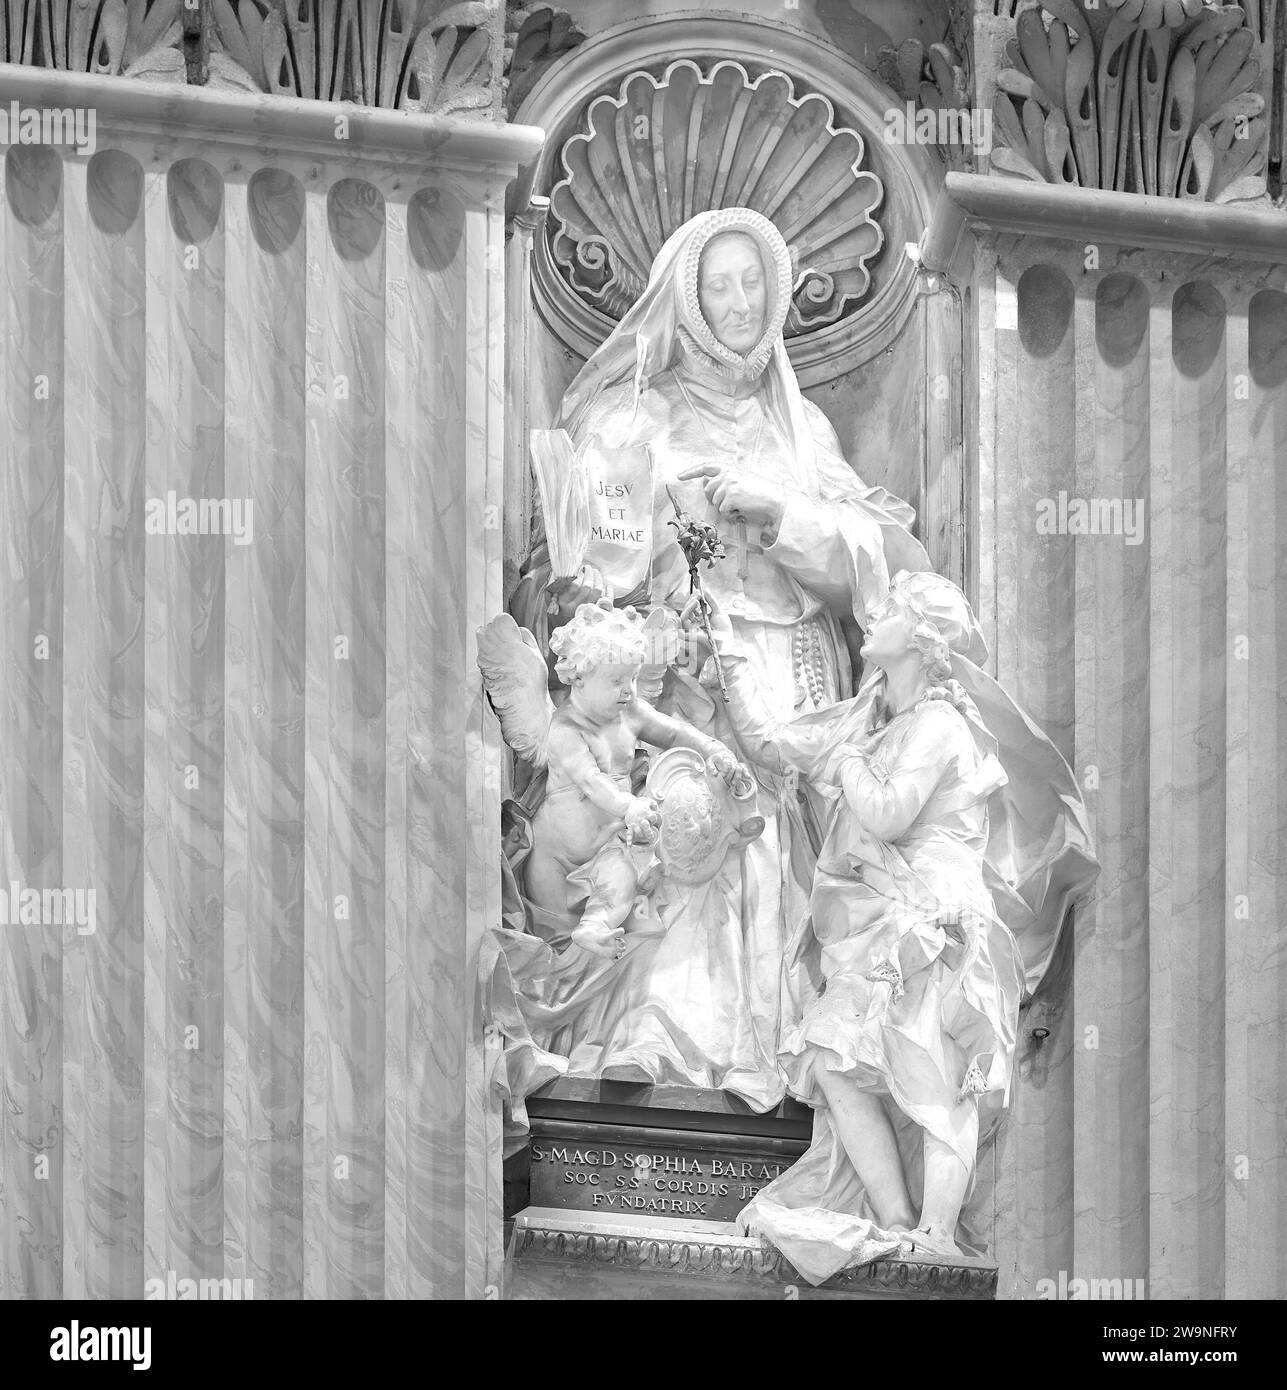 Statue commémorative, à St Magd Sophia Barat, dans la basilique Saint-Pierre, Vatican, Rome, Italie Banque D'Images